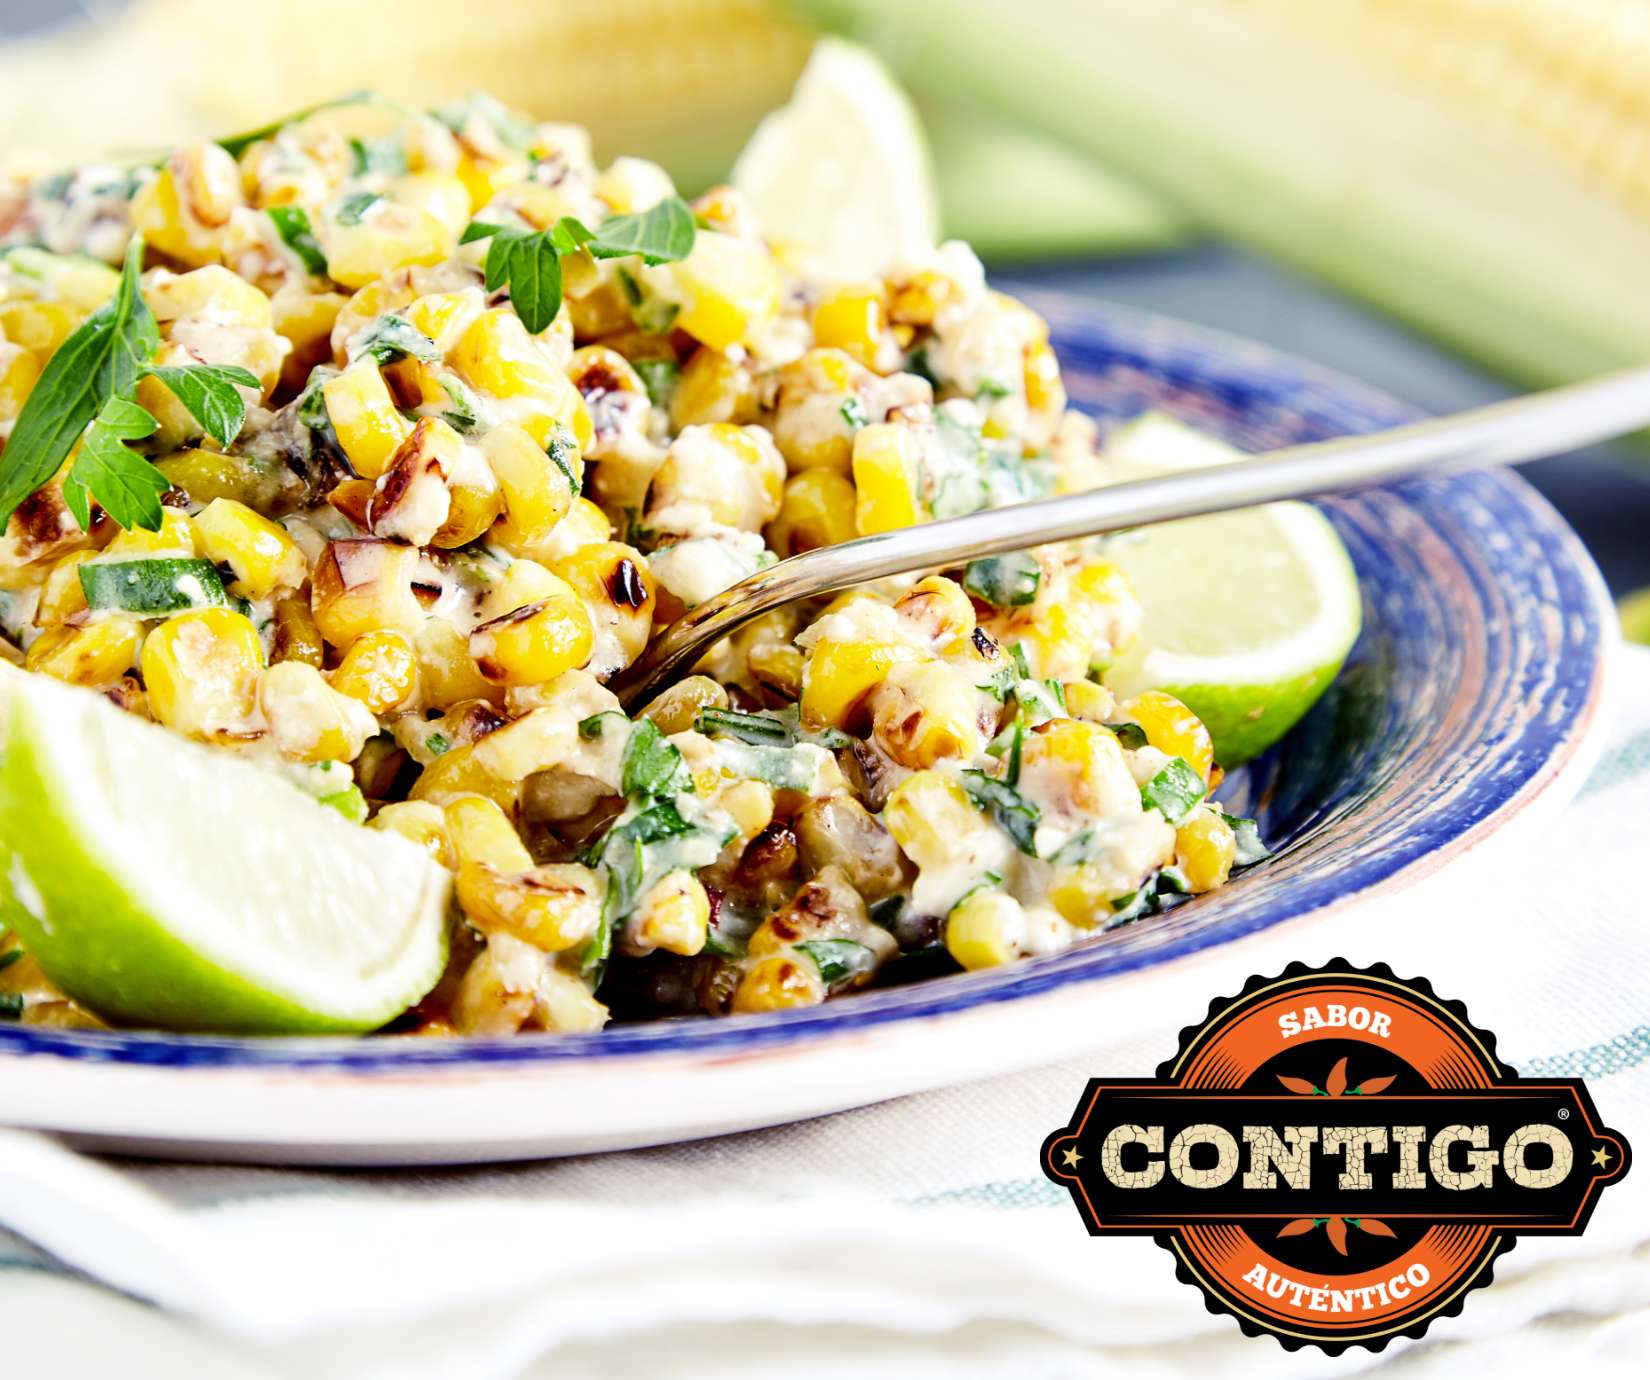 Contigo® Mexican-Style Roasted Street Corn Dip